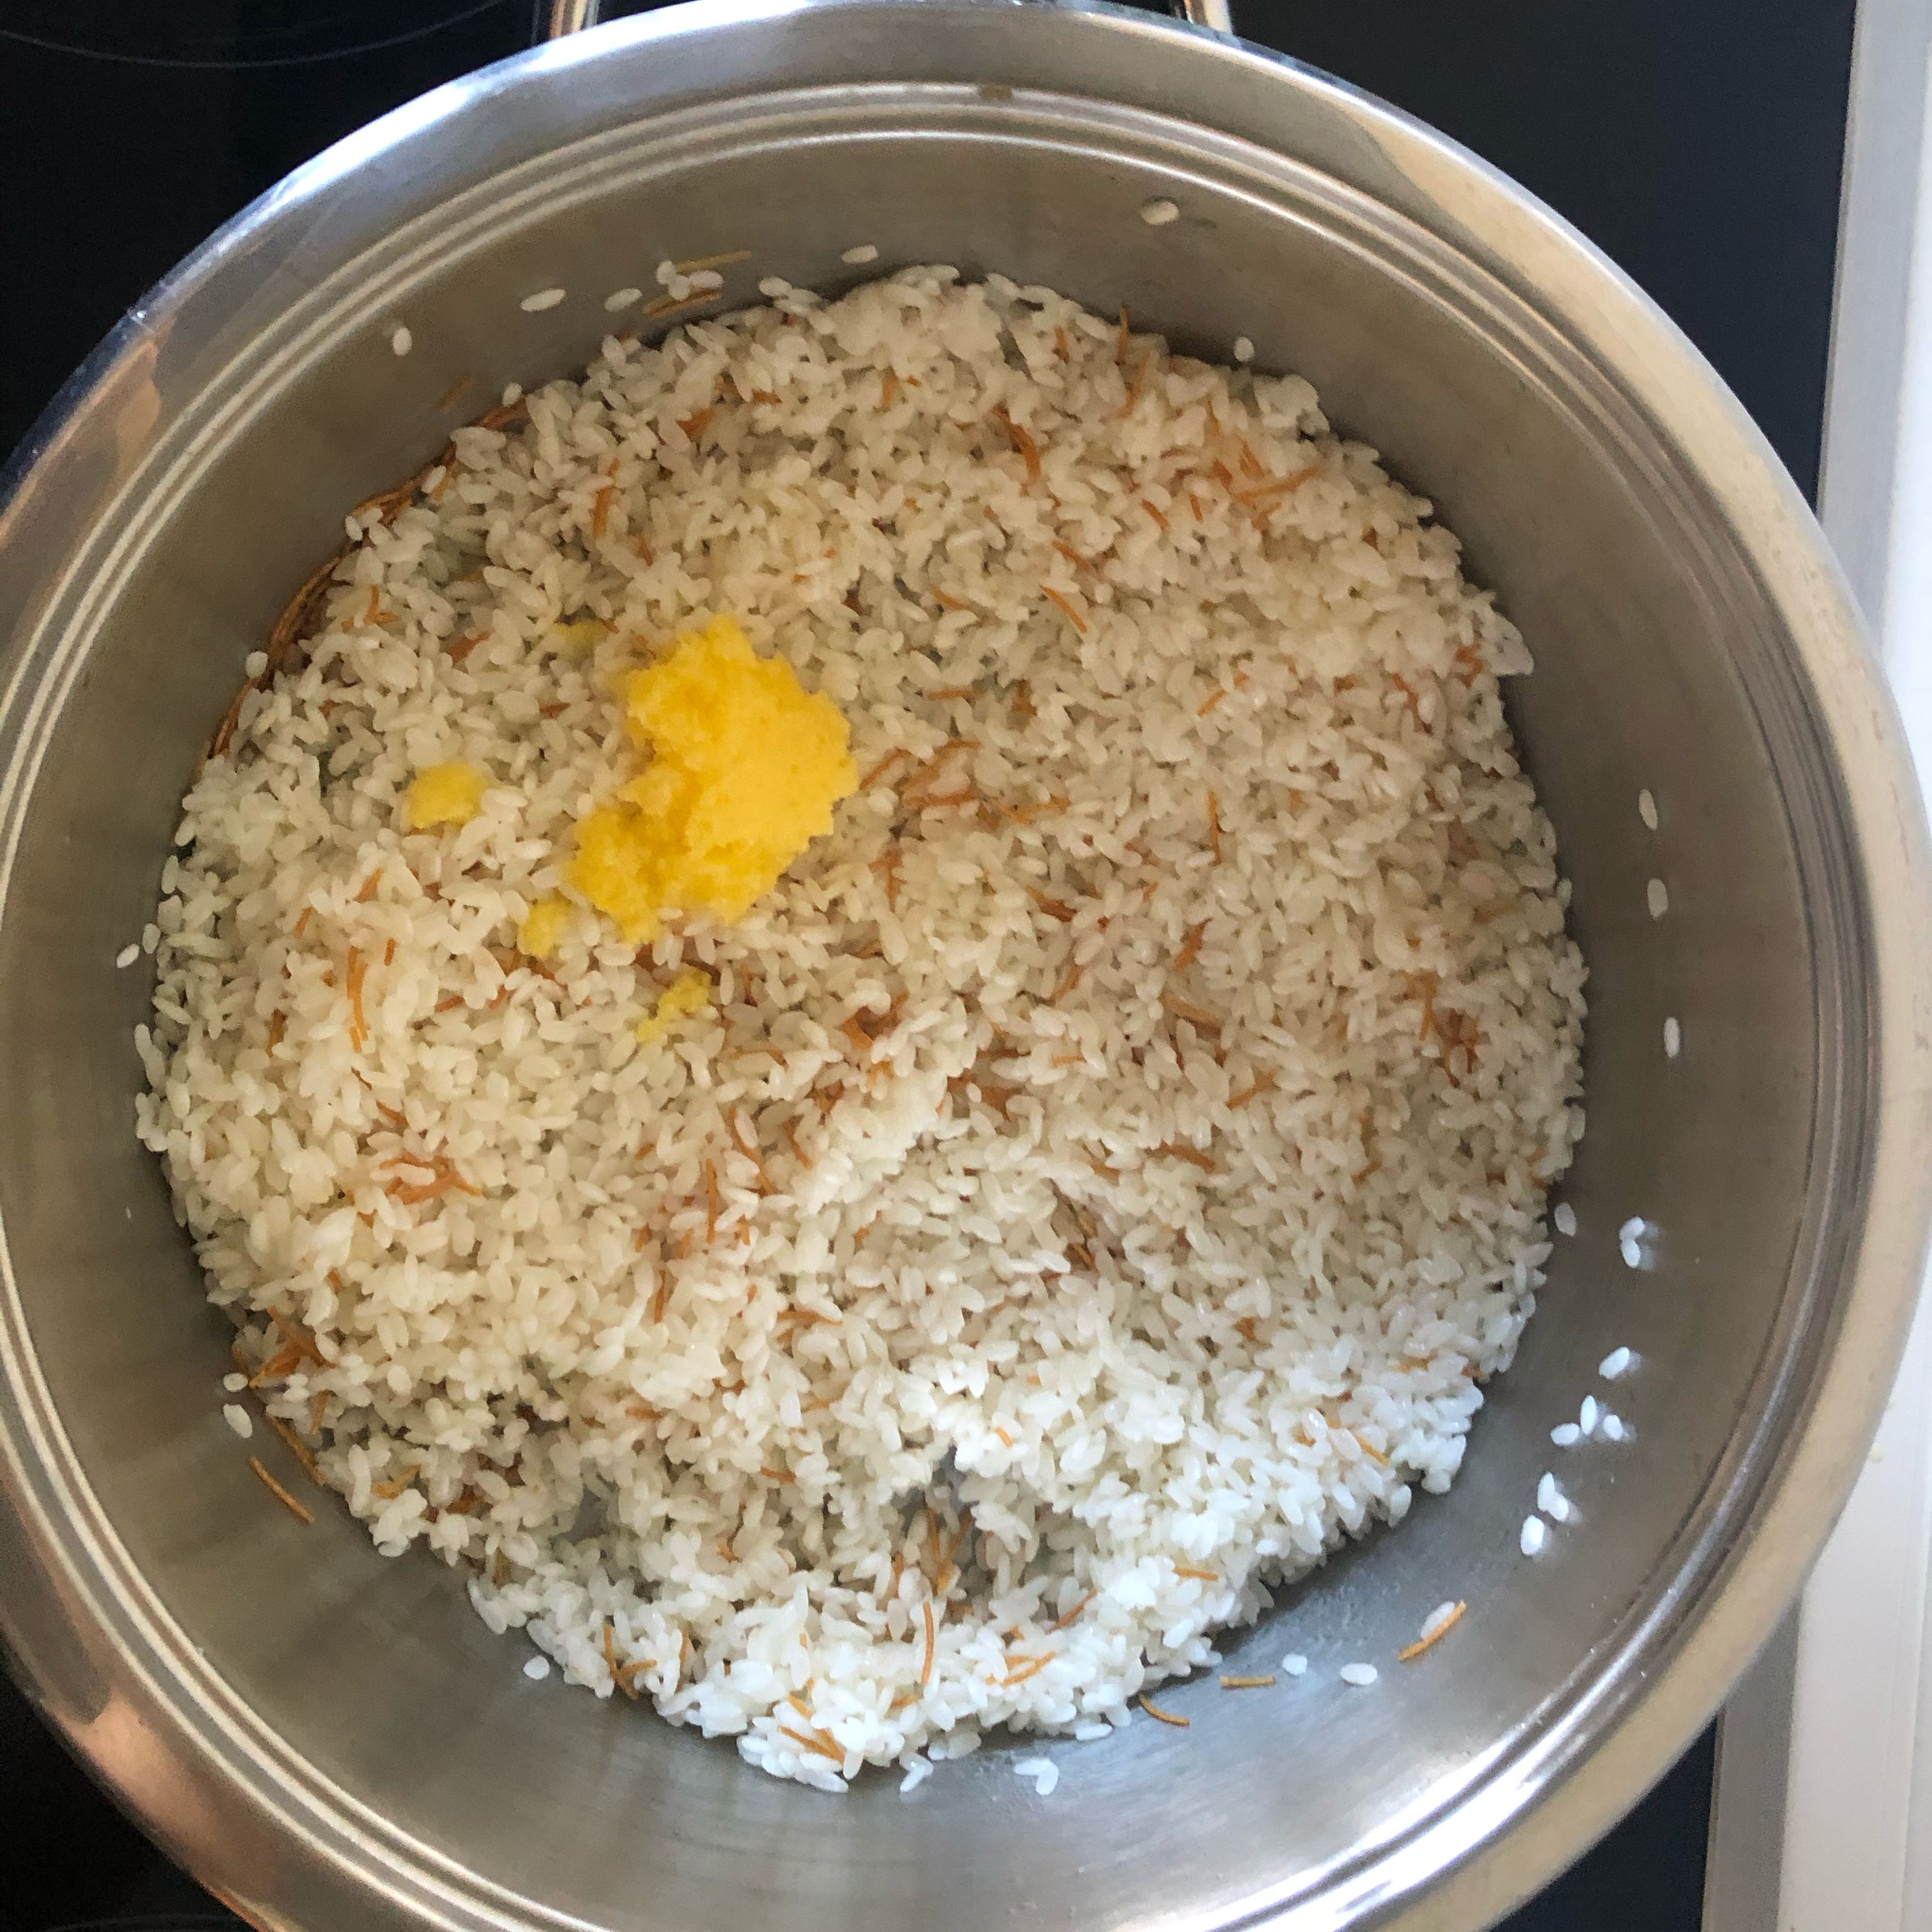 Den abgetropften Reis in den Topf geben, vermischen und dann die Butter hinzufügen (alles gut vermischen. Und kurz unter ständigem Rühren braten lassen).